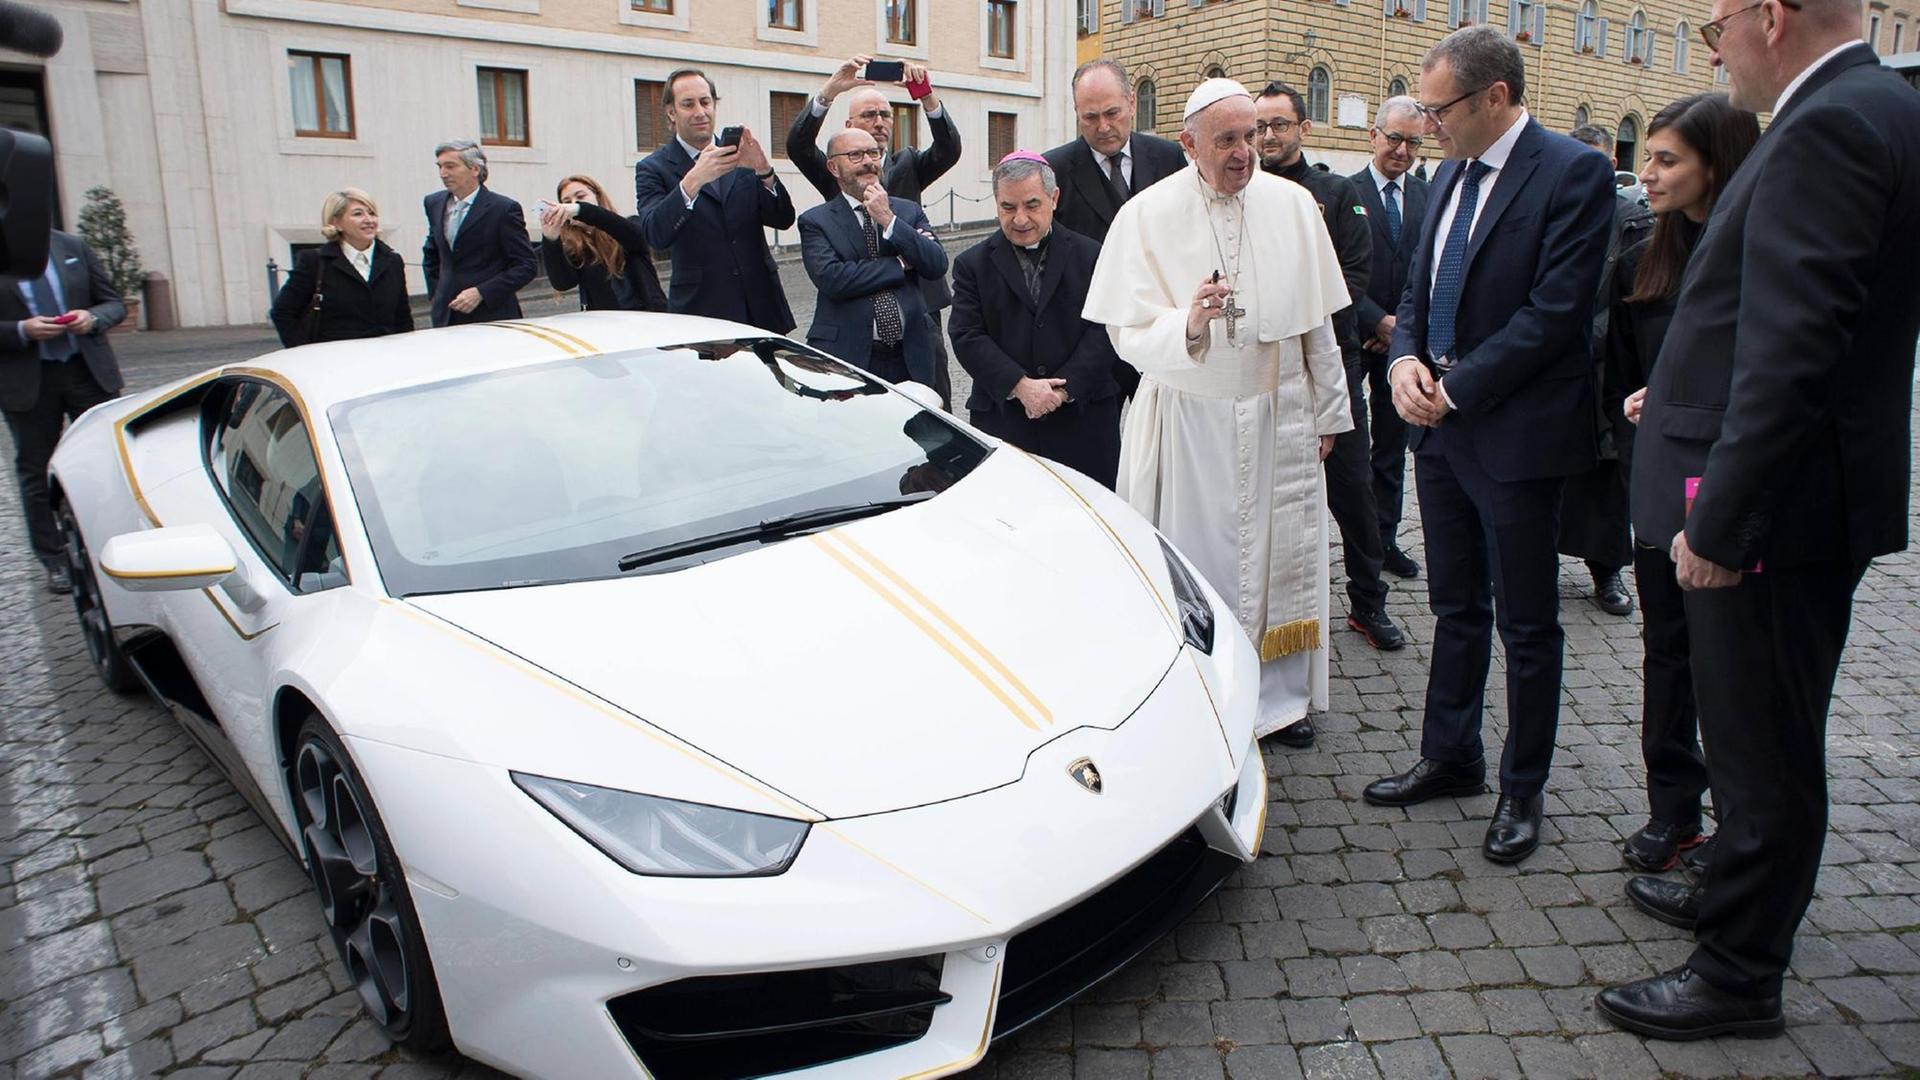 Das Bild zeiht Papst Franziskus neben einem weißen Sportwagen.